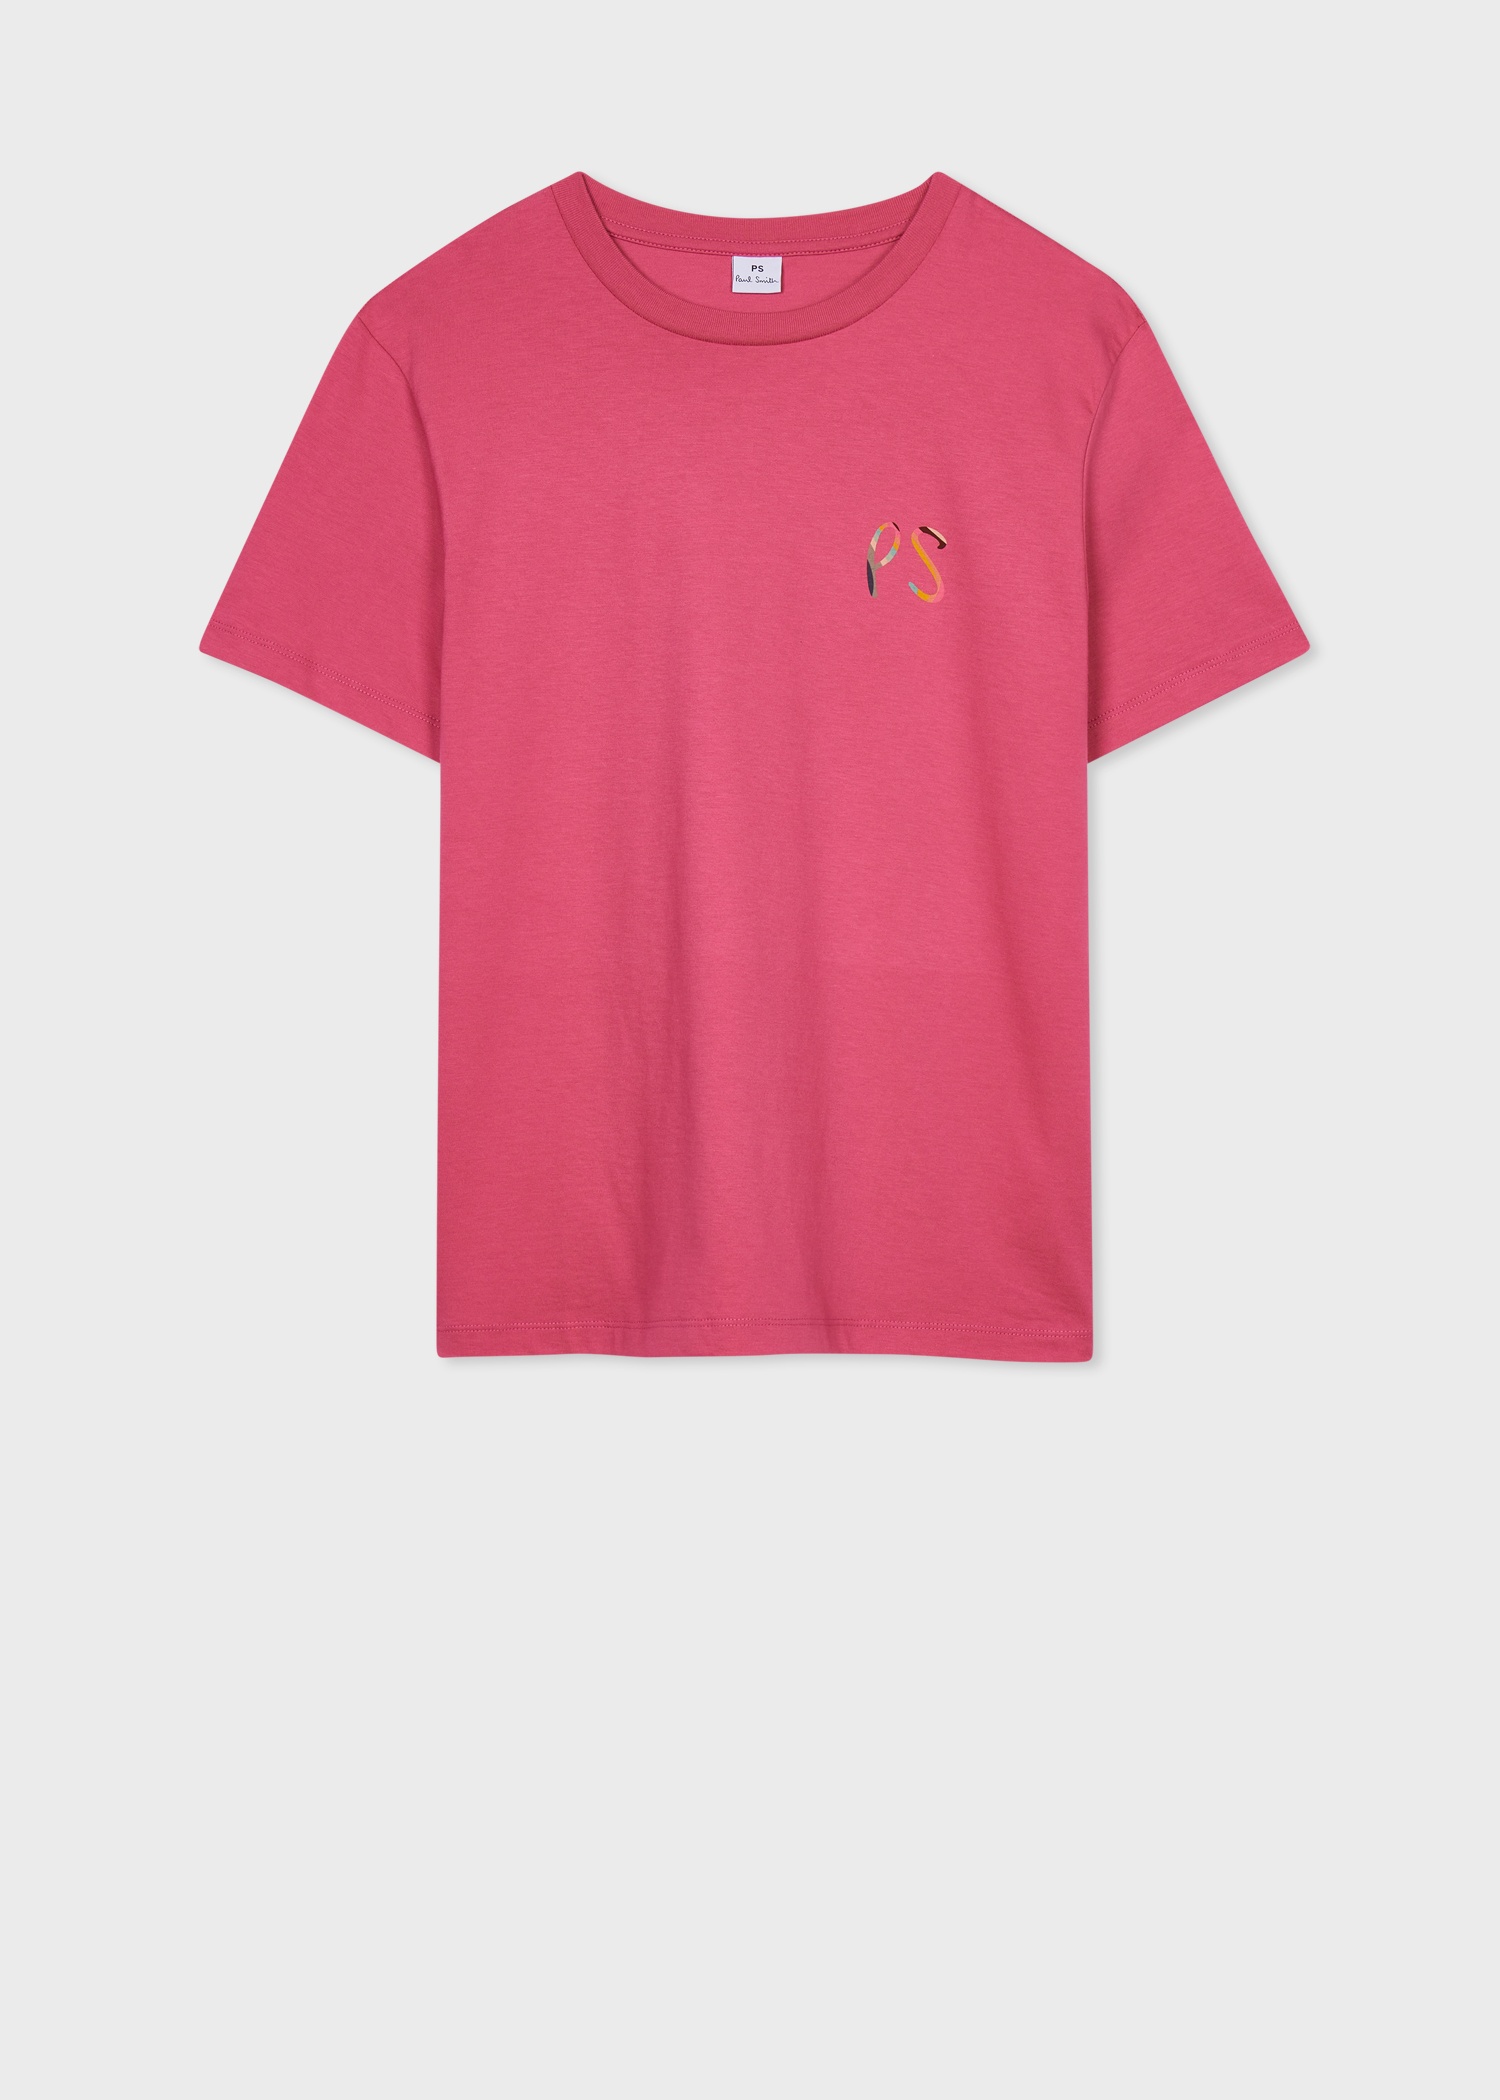 Women's Dark Pink 'Swirl' PS Logo T-Shirt - 1